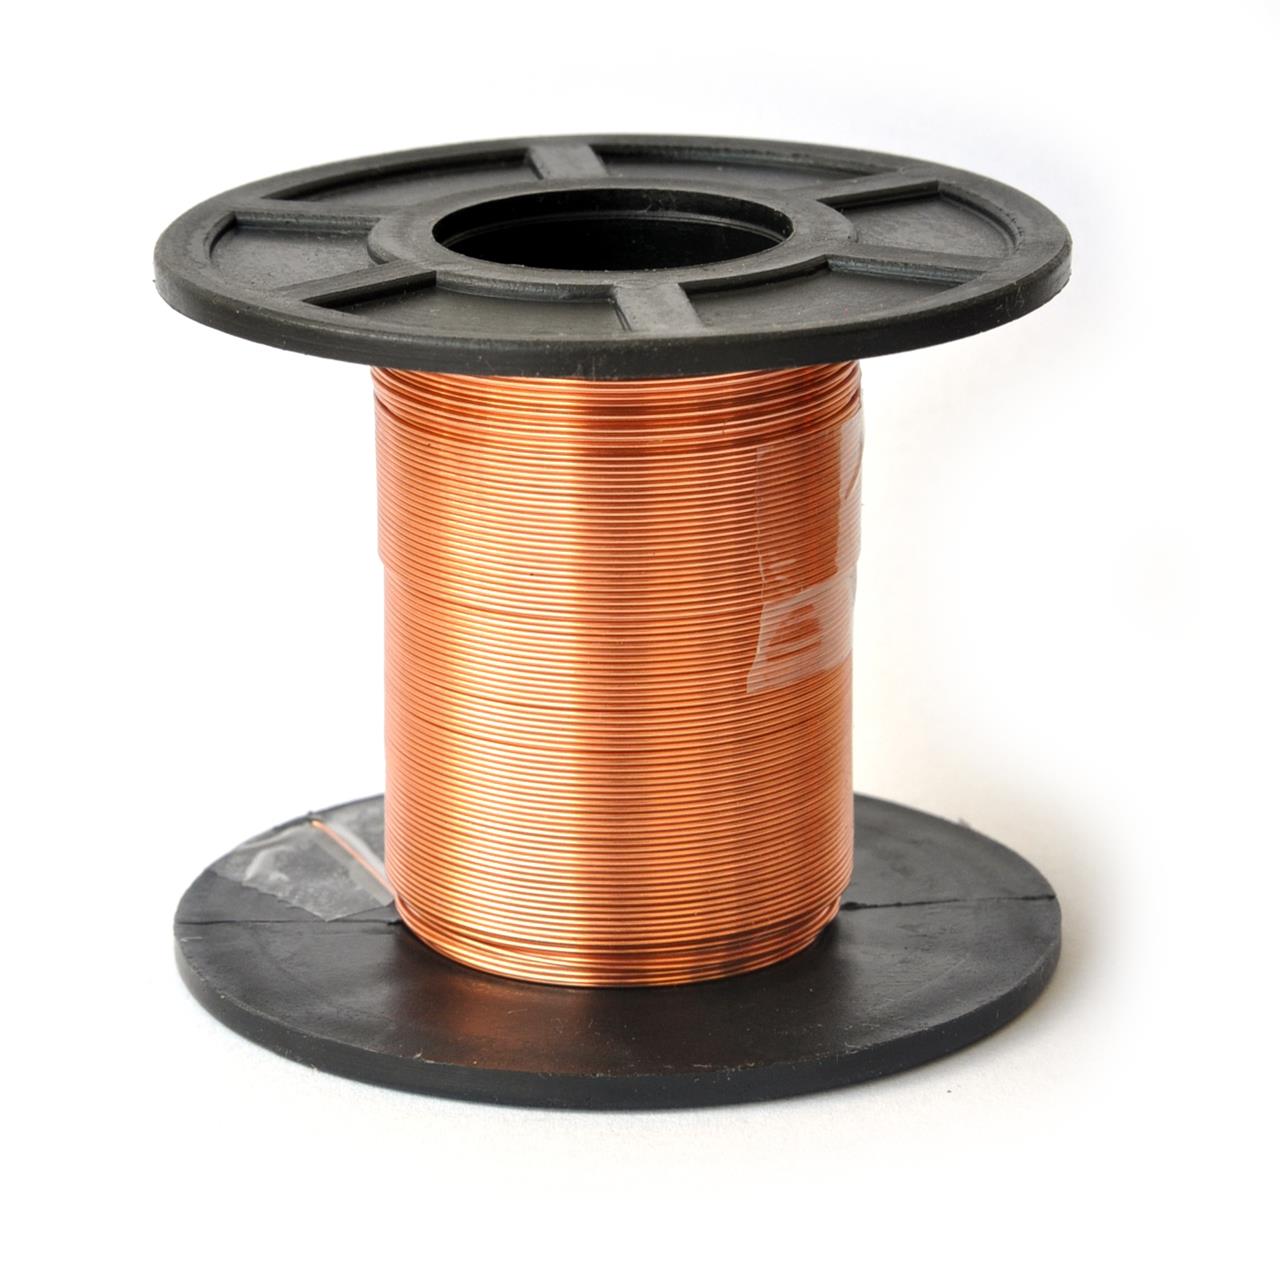 Fios de cobre esmaltados para bobinas, transformadores e indutores - Fio 25 AWG 100g